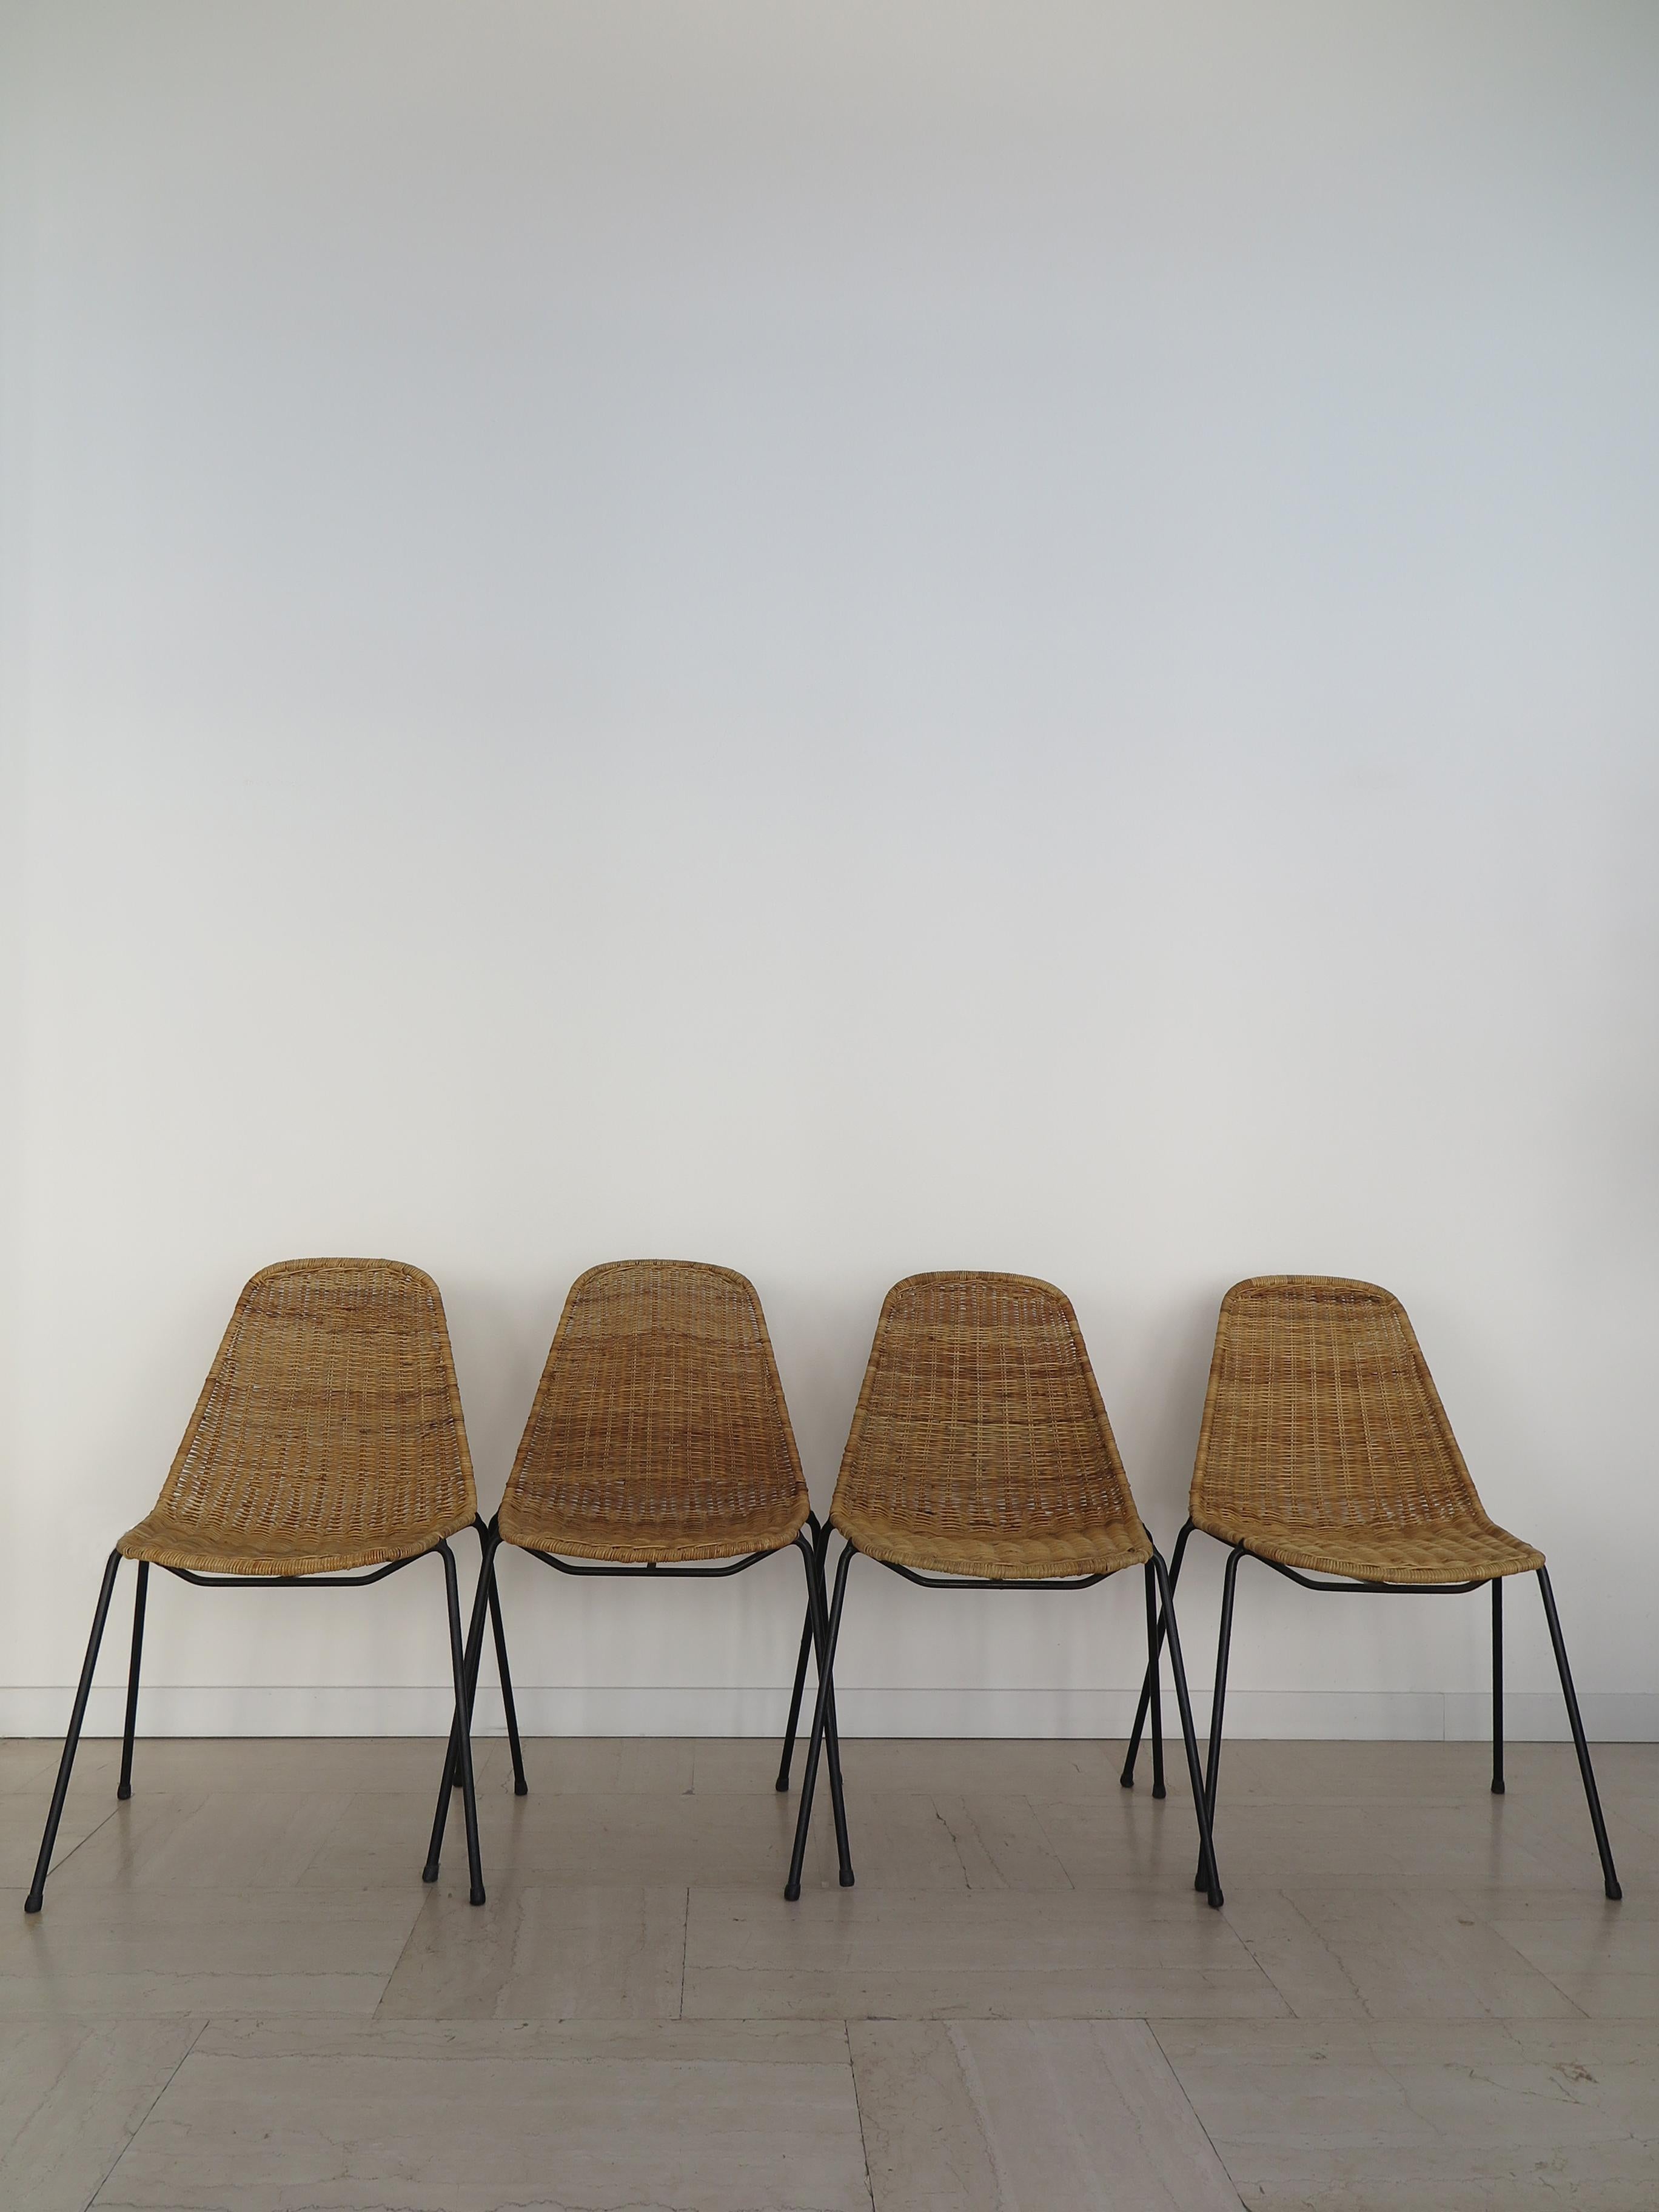 Satz von vier italienischen Midcentury Modern Design Esszimmerstühle mit schwarz lackiertem Metallrahmen und Rattan Sitz Modell Basket Design von Franco Campo & Carlo Graffi und produziert von Home, Italien 1950er Jahre.

Bitte beachten Sie, dass